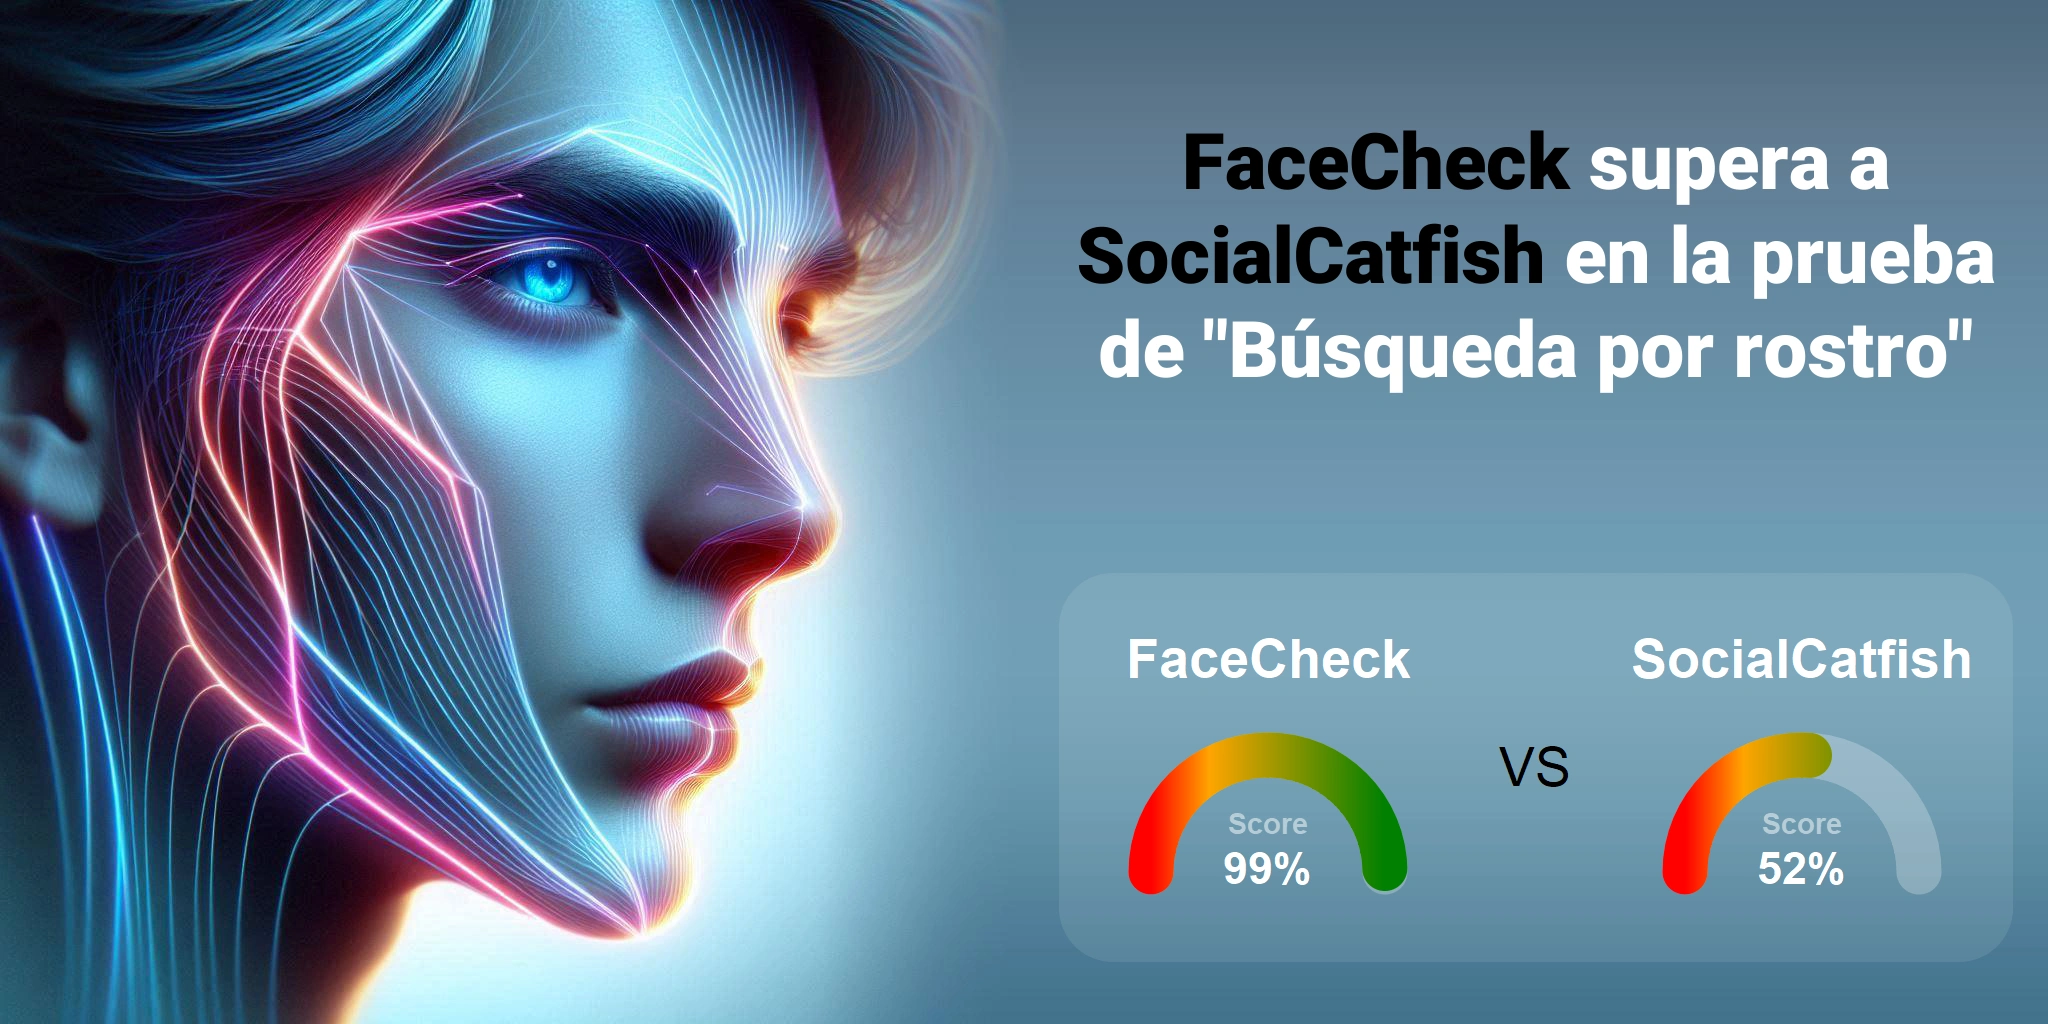 ¿Cuál es mejor para la búsqueda facial: <br>FaceCheck o SocialCatfish?